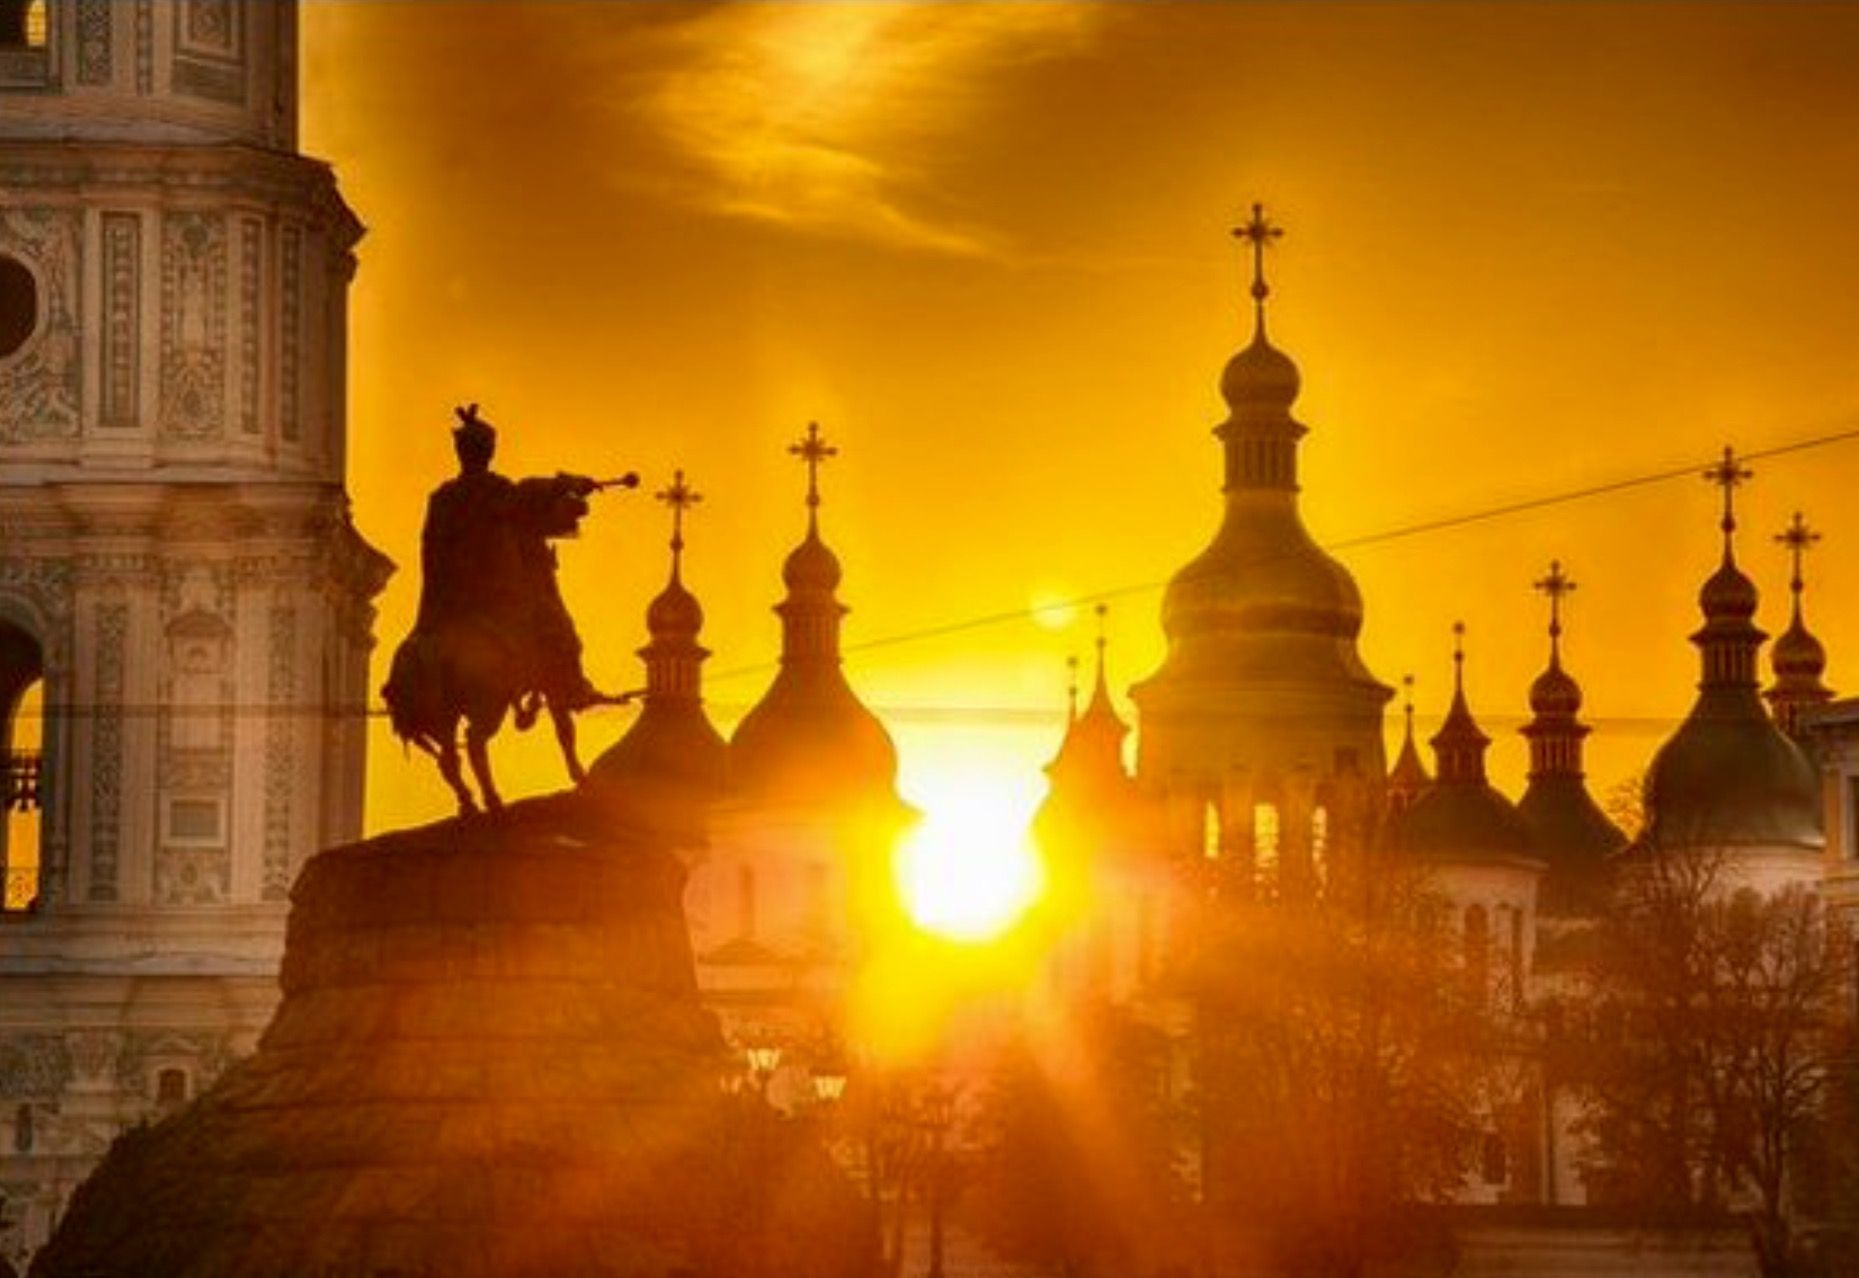 Київ претендує на звання «найрозумнішого міста в світі»